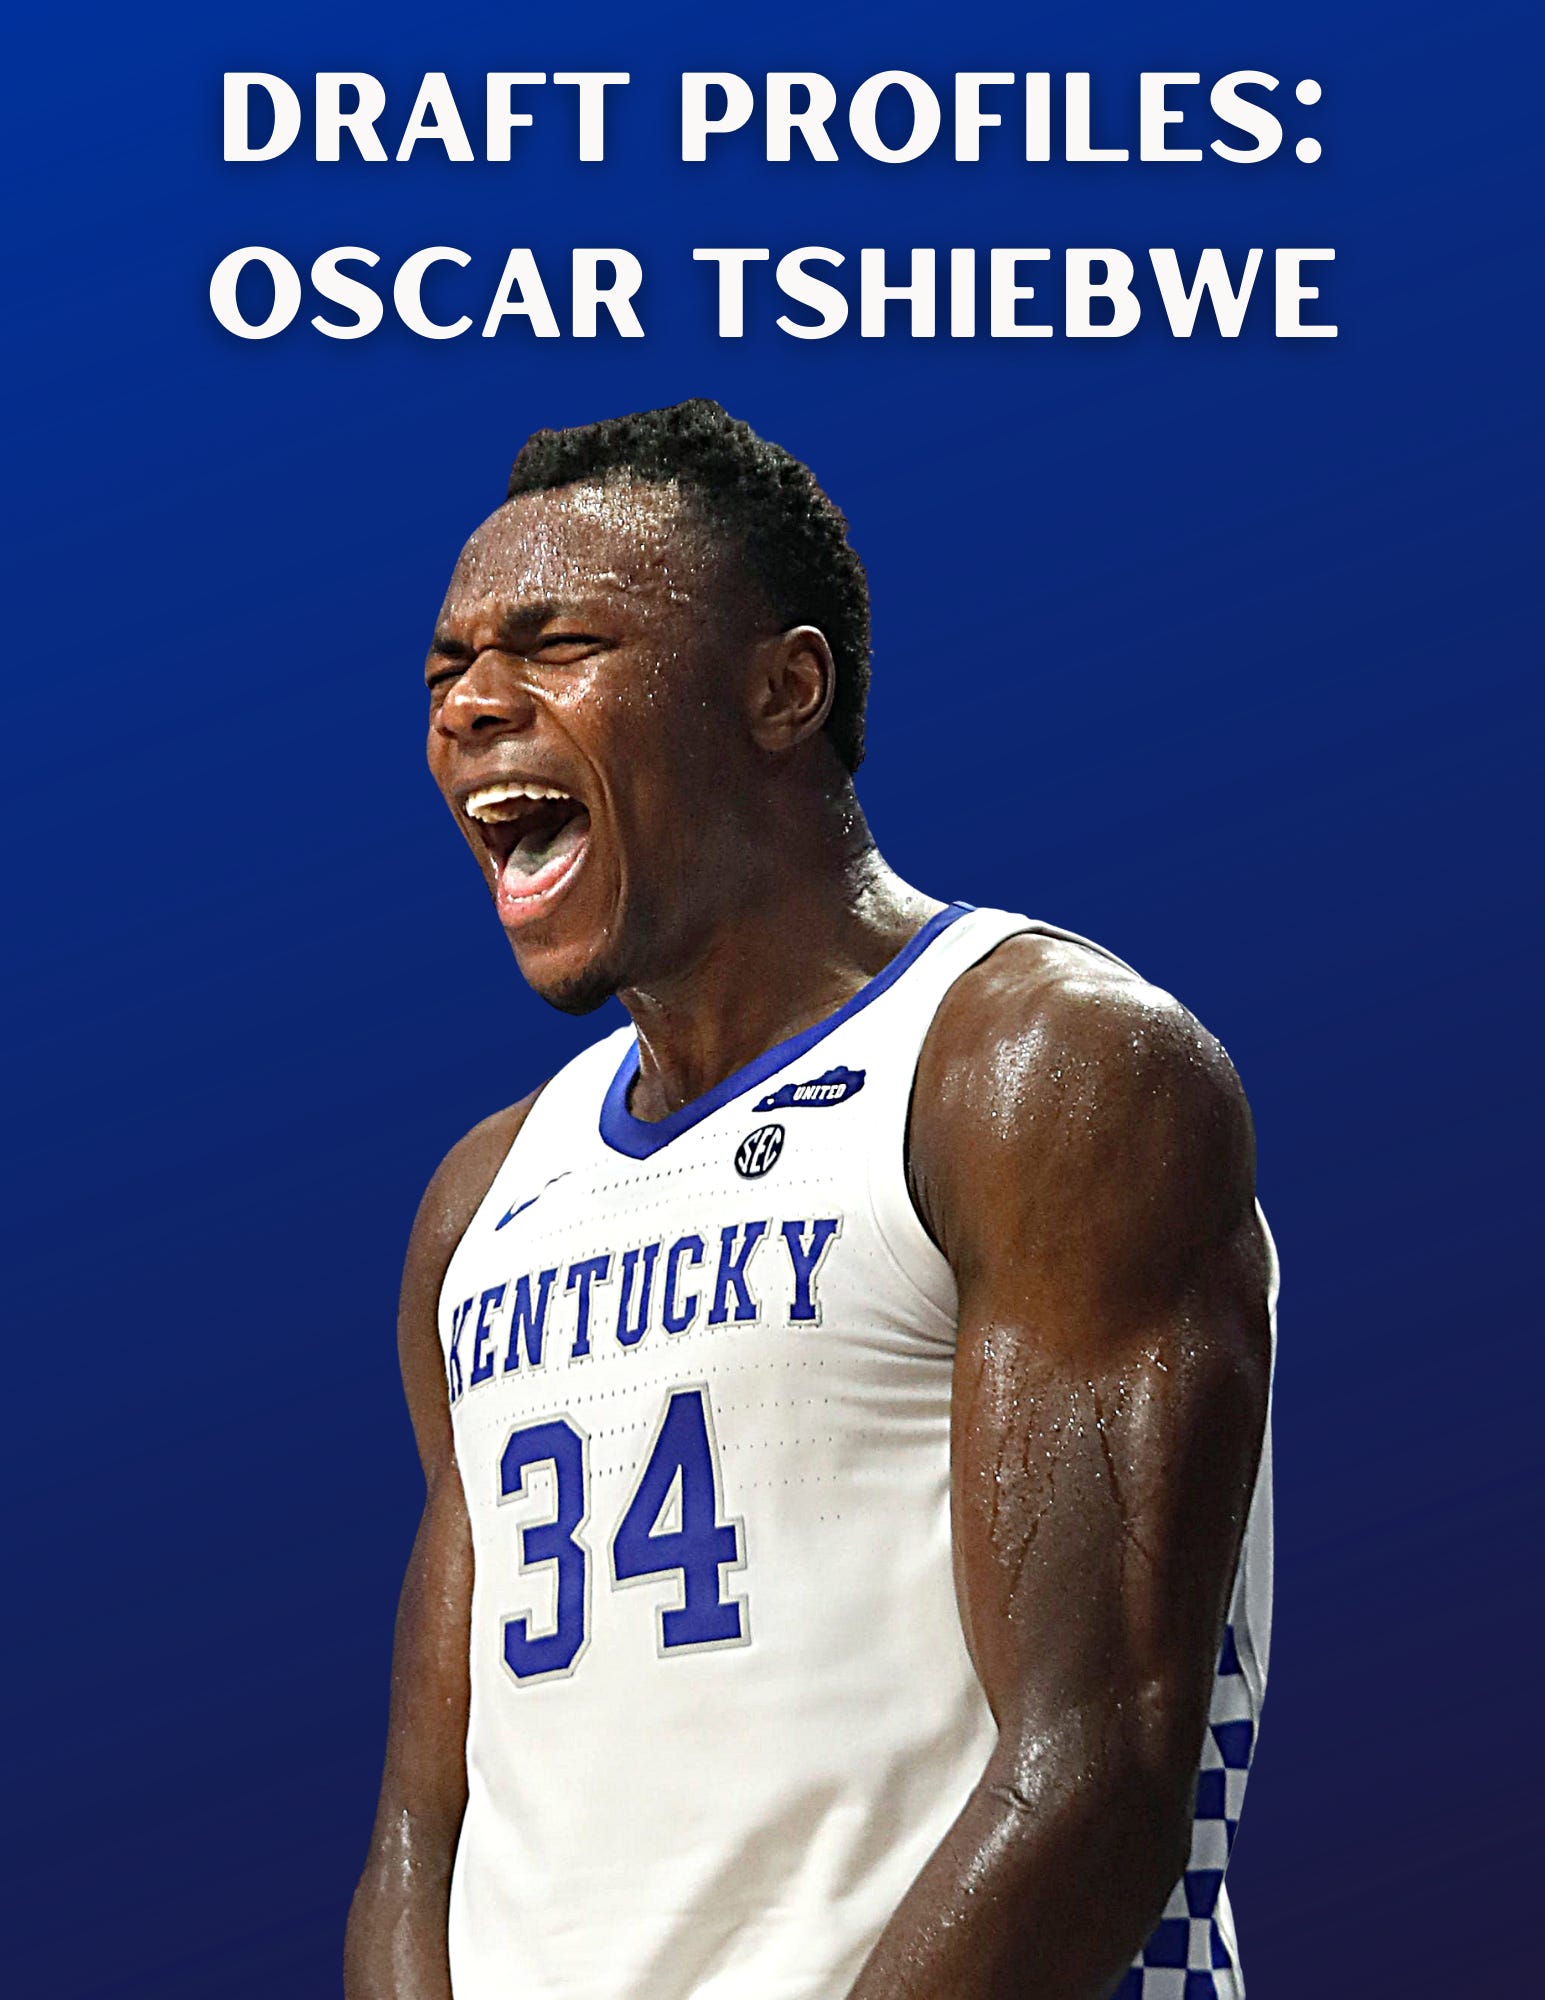 Draft Profiles Oscar Tshiebwe by Stephen Gillaspie